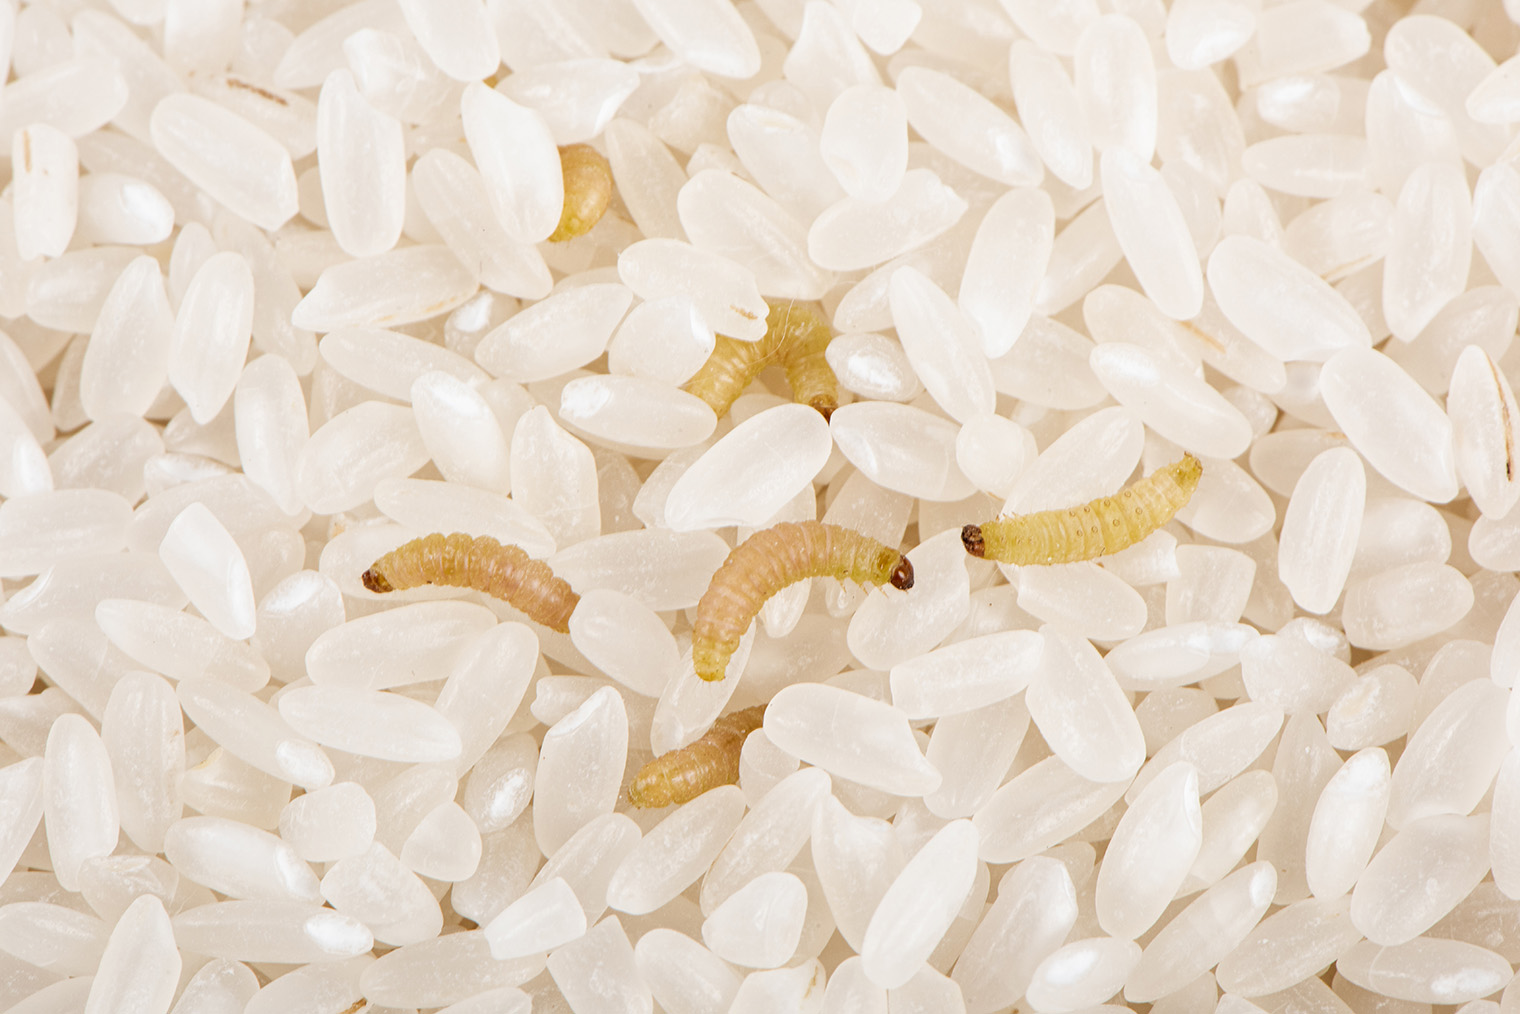 Картинка не для слабонервных: личинки моли поедают зерна риса. Фотография: kungfu01 / Shutterstock